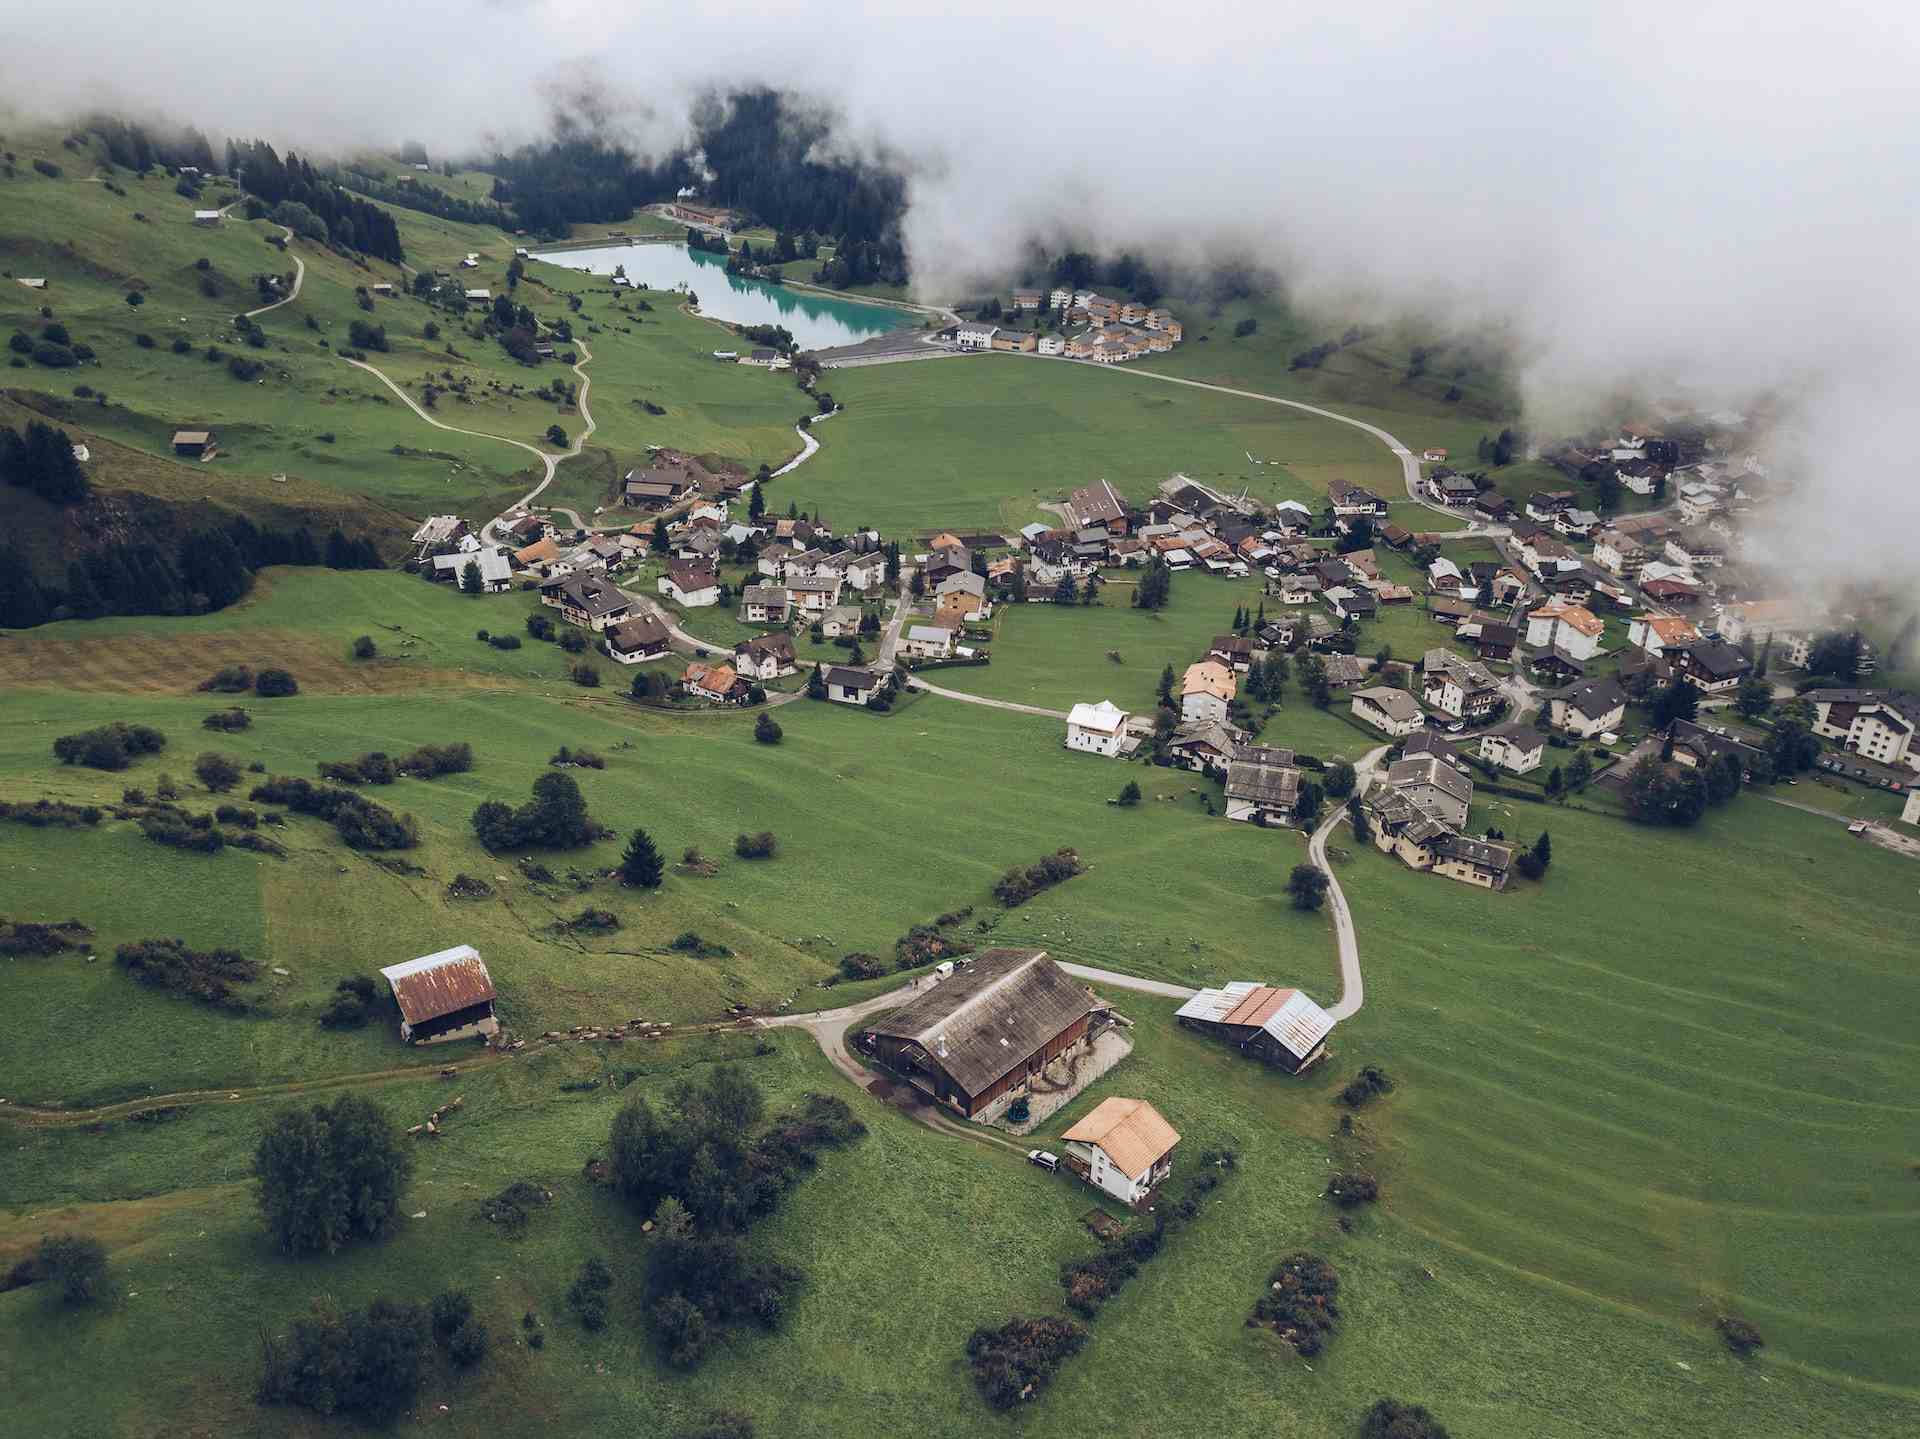 Biohof Taufs, producer in Putz canton of Graubünden in Switzerland